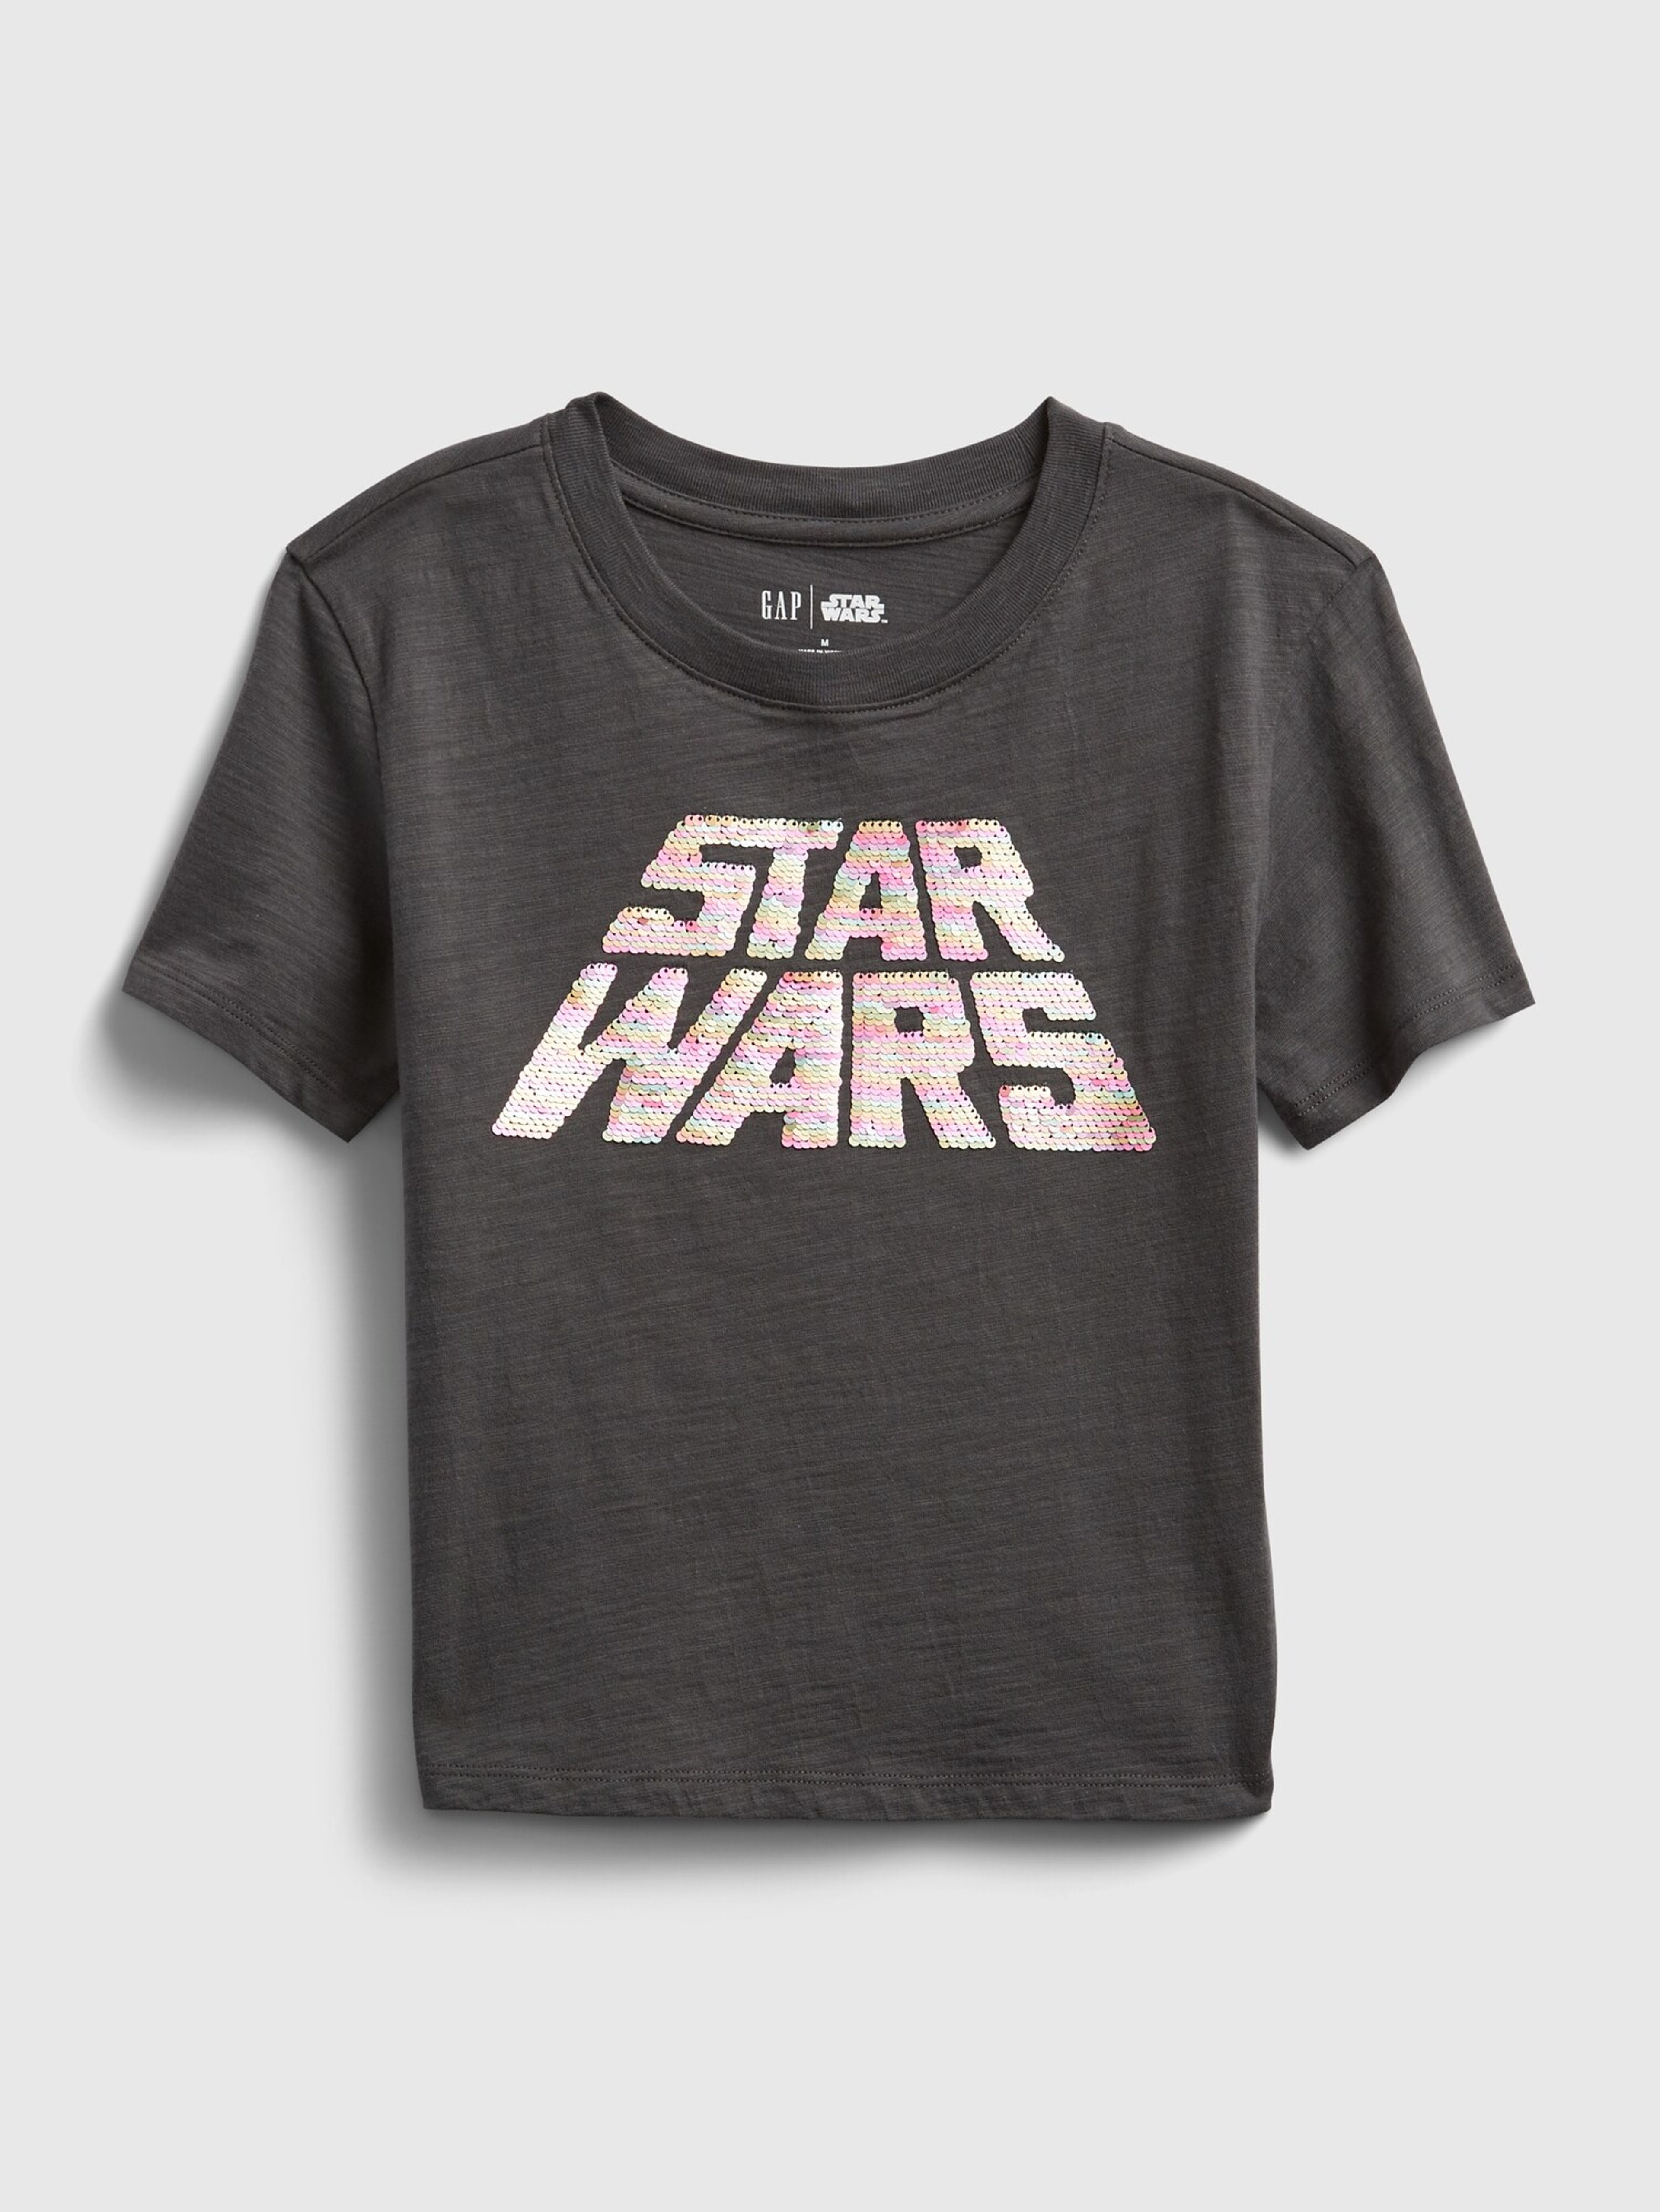 T-shirt dziecięcy GAP & Star Wars